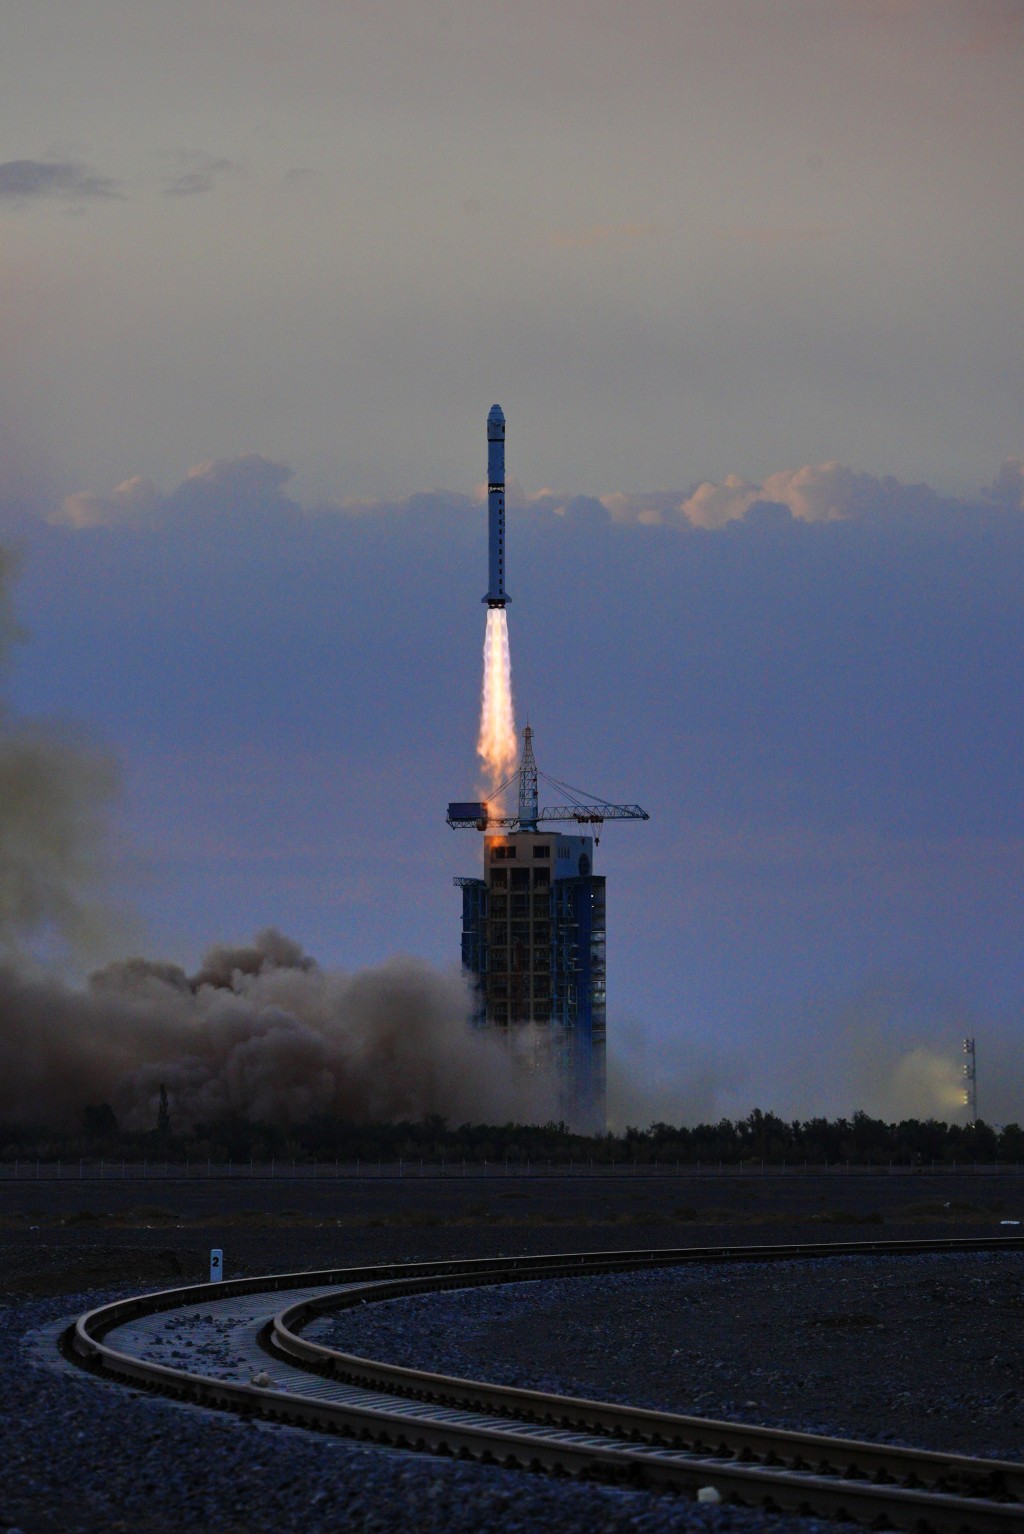 雲海一號03星送入預定軌道，發射任務取得圓滿成功。新華社